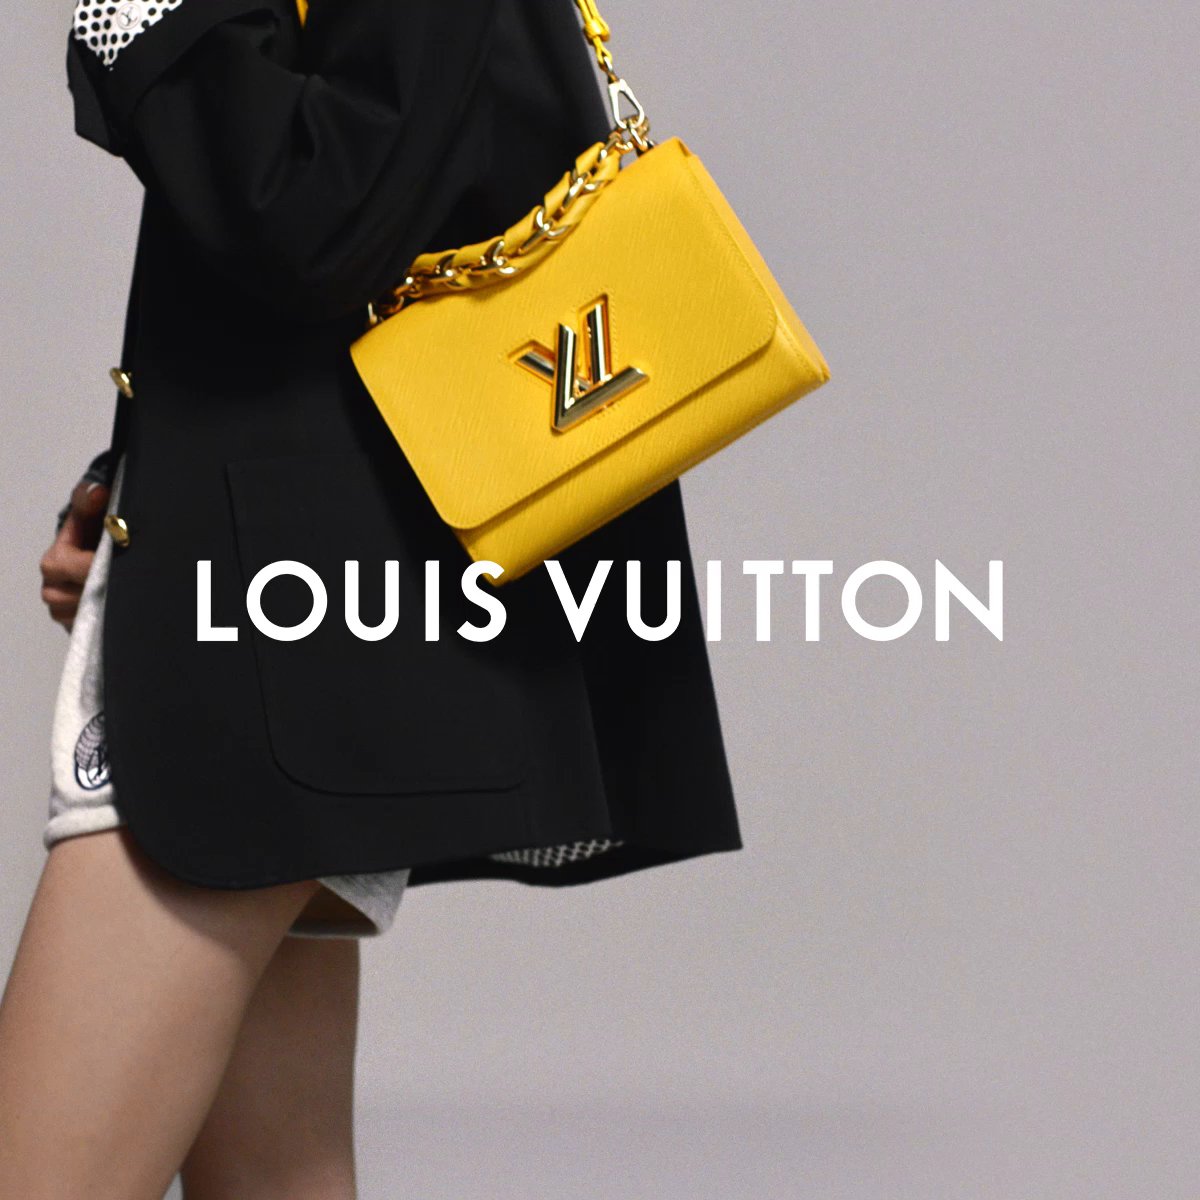 Louis Vuitton on X: Hoyeon and the Twist. The South Korean